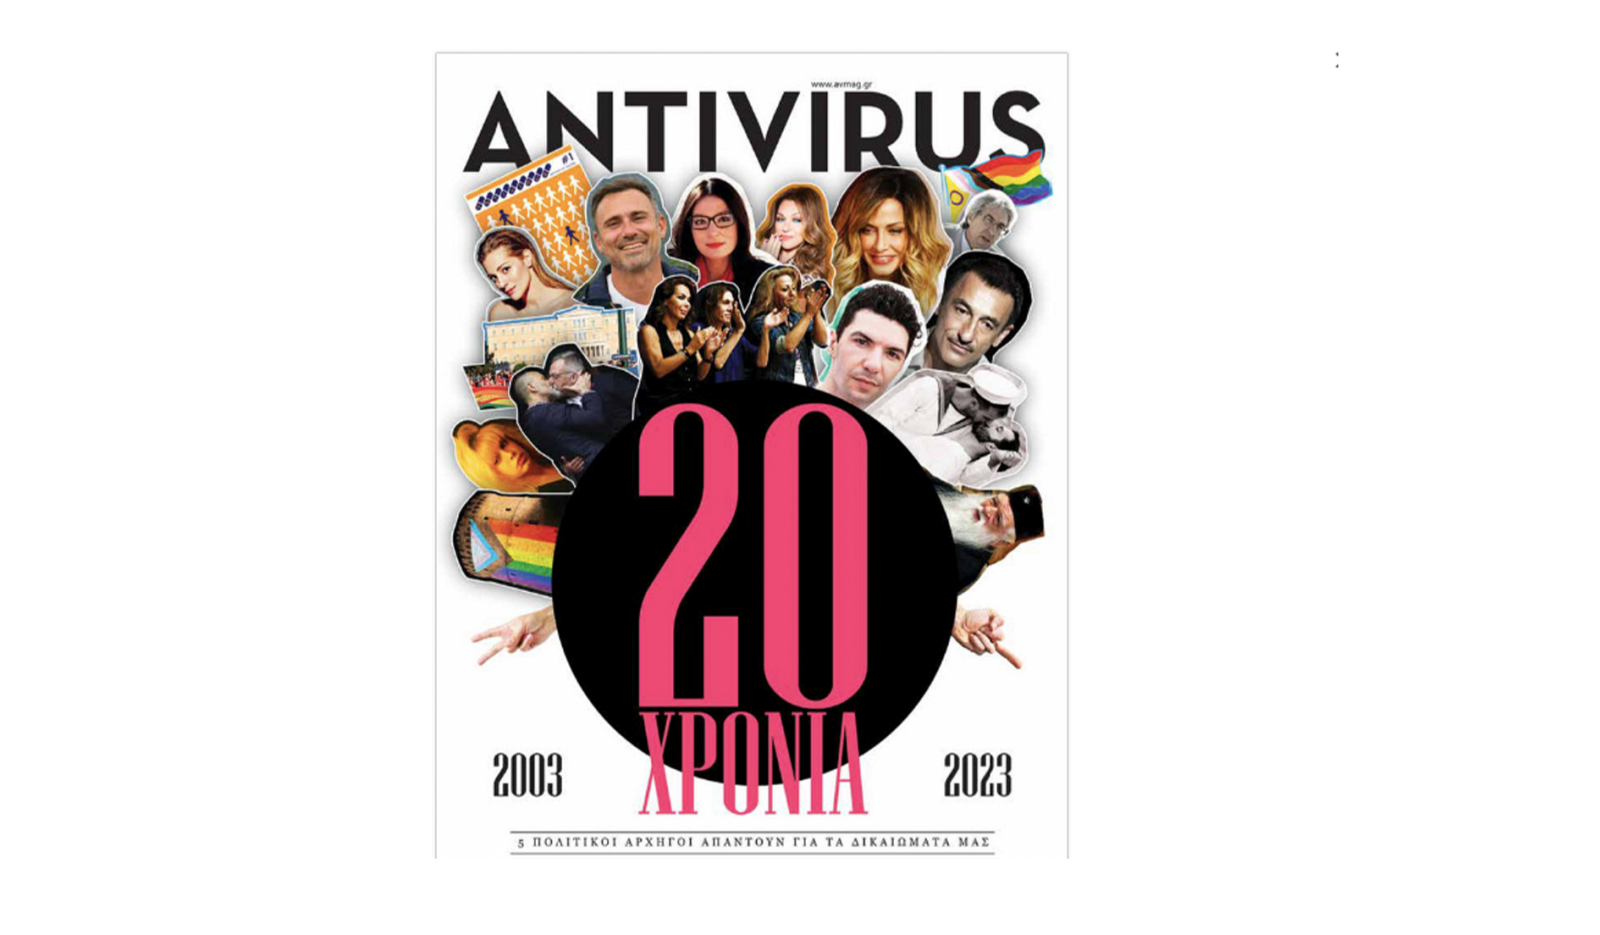 Οι πολιτικοί αρχηγοί στο περιοδικό Αntivirus για τα ΛΟΑΤΚΙ+ δικαιώματα